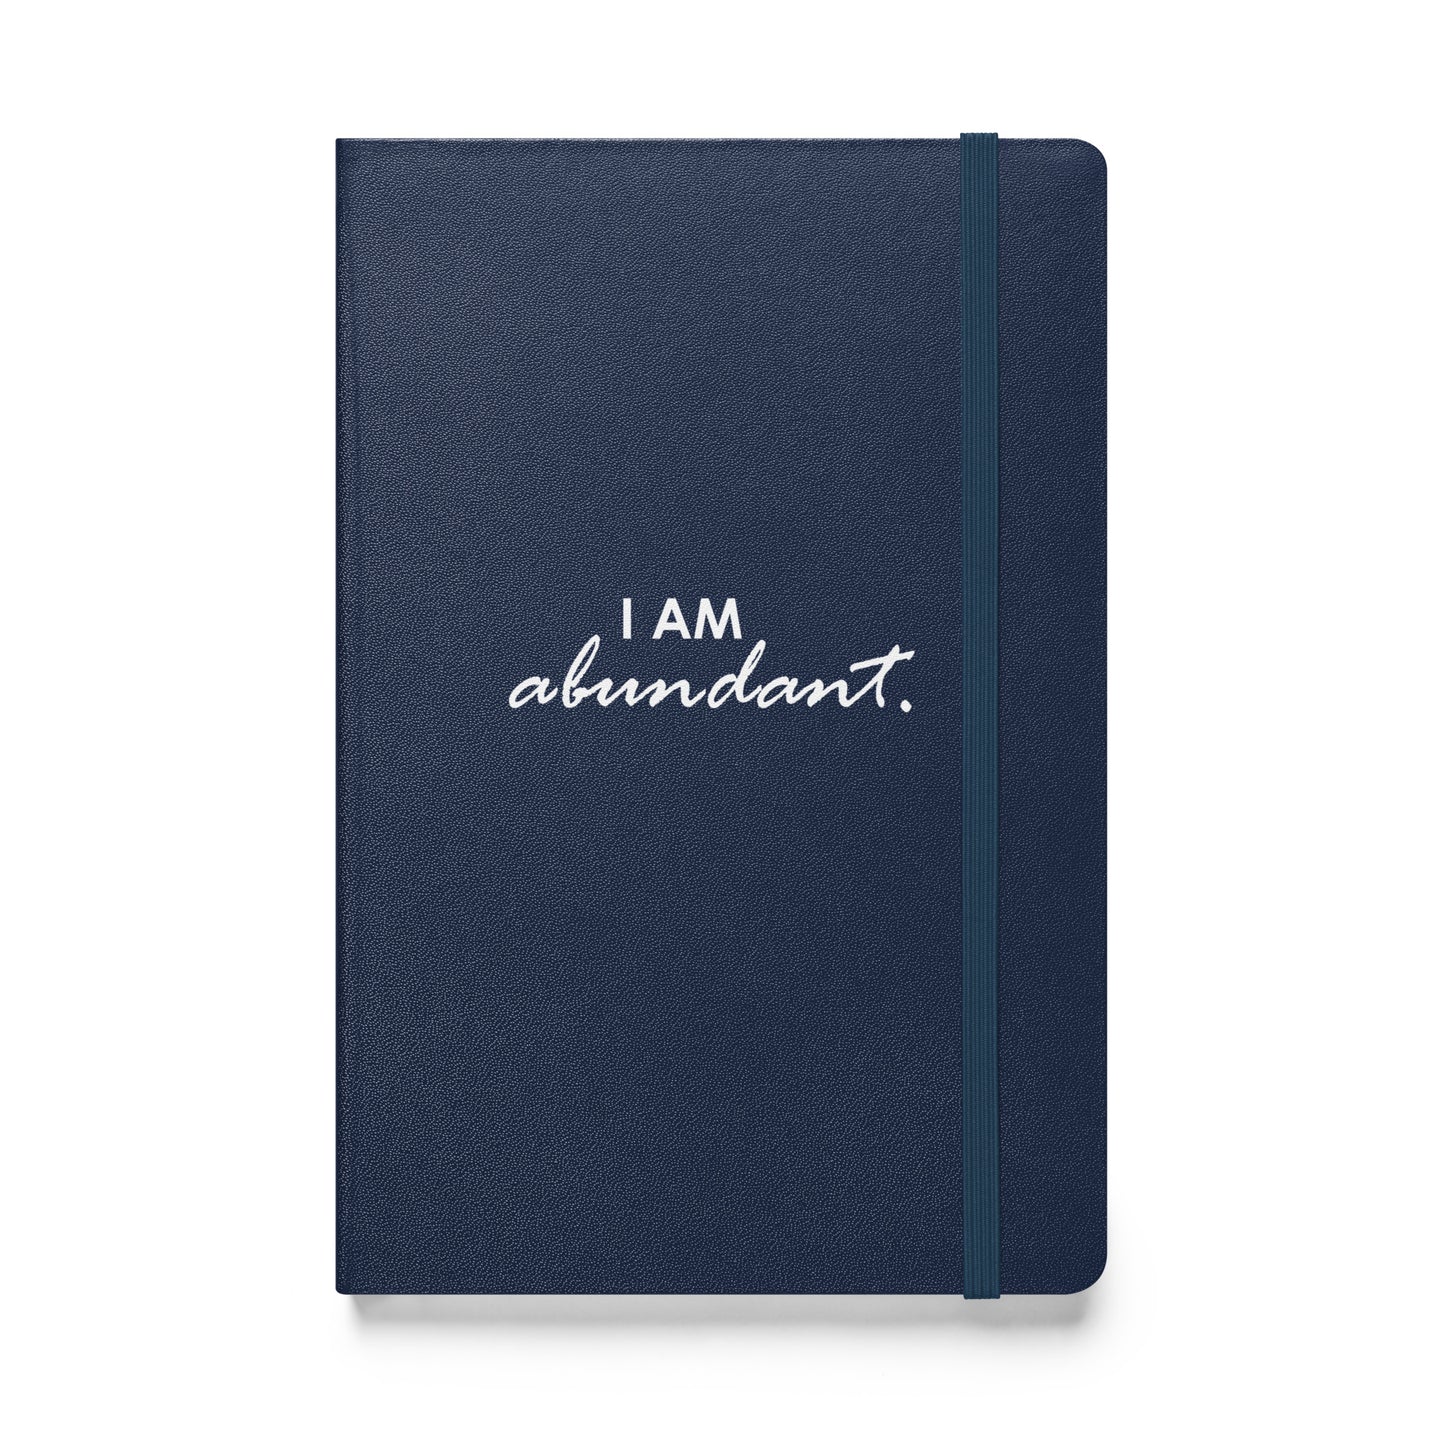 I AM ABUNDANT - Hardcover bound notebook & FREE Affirmation Digital Download